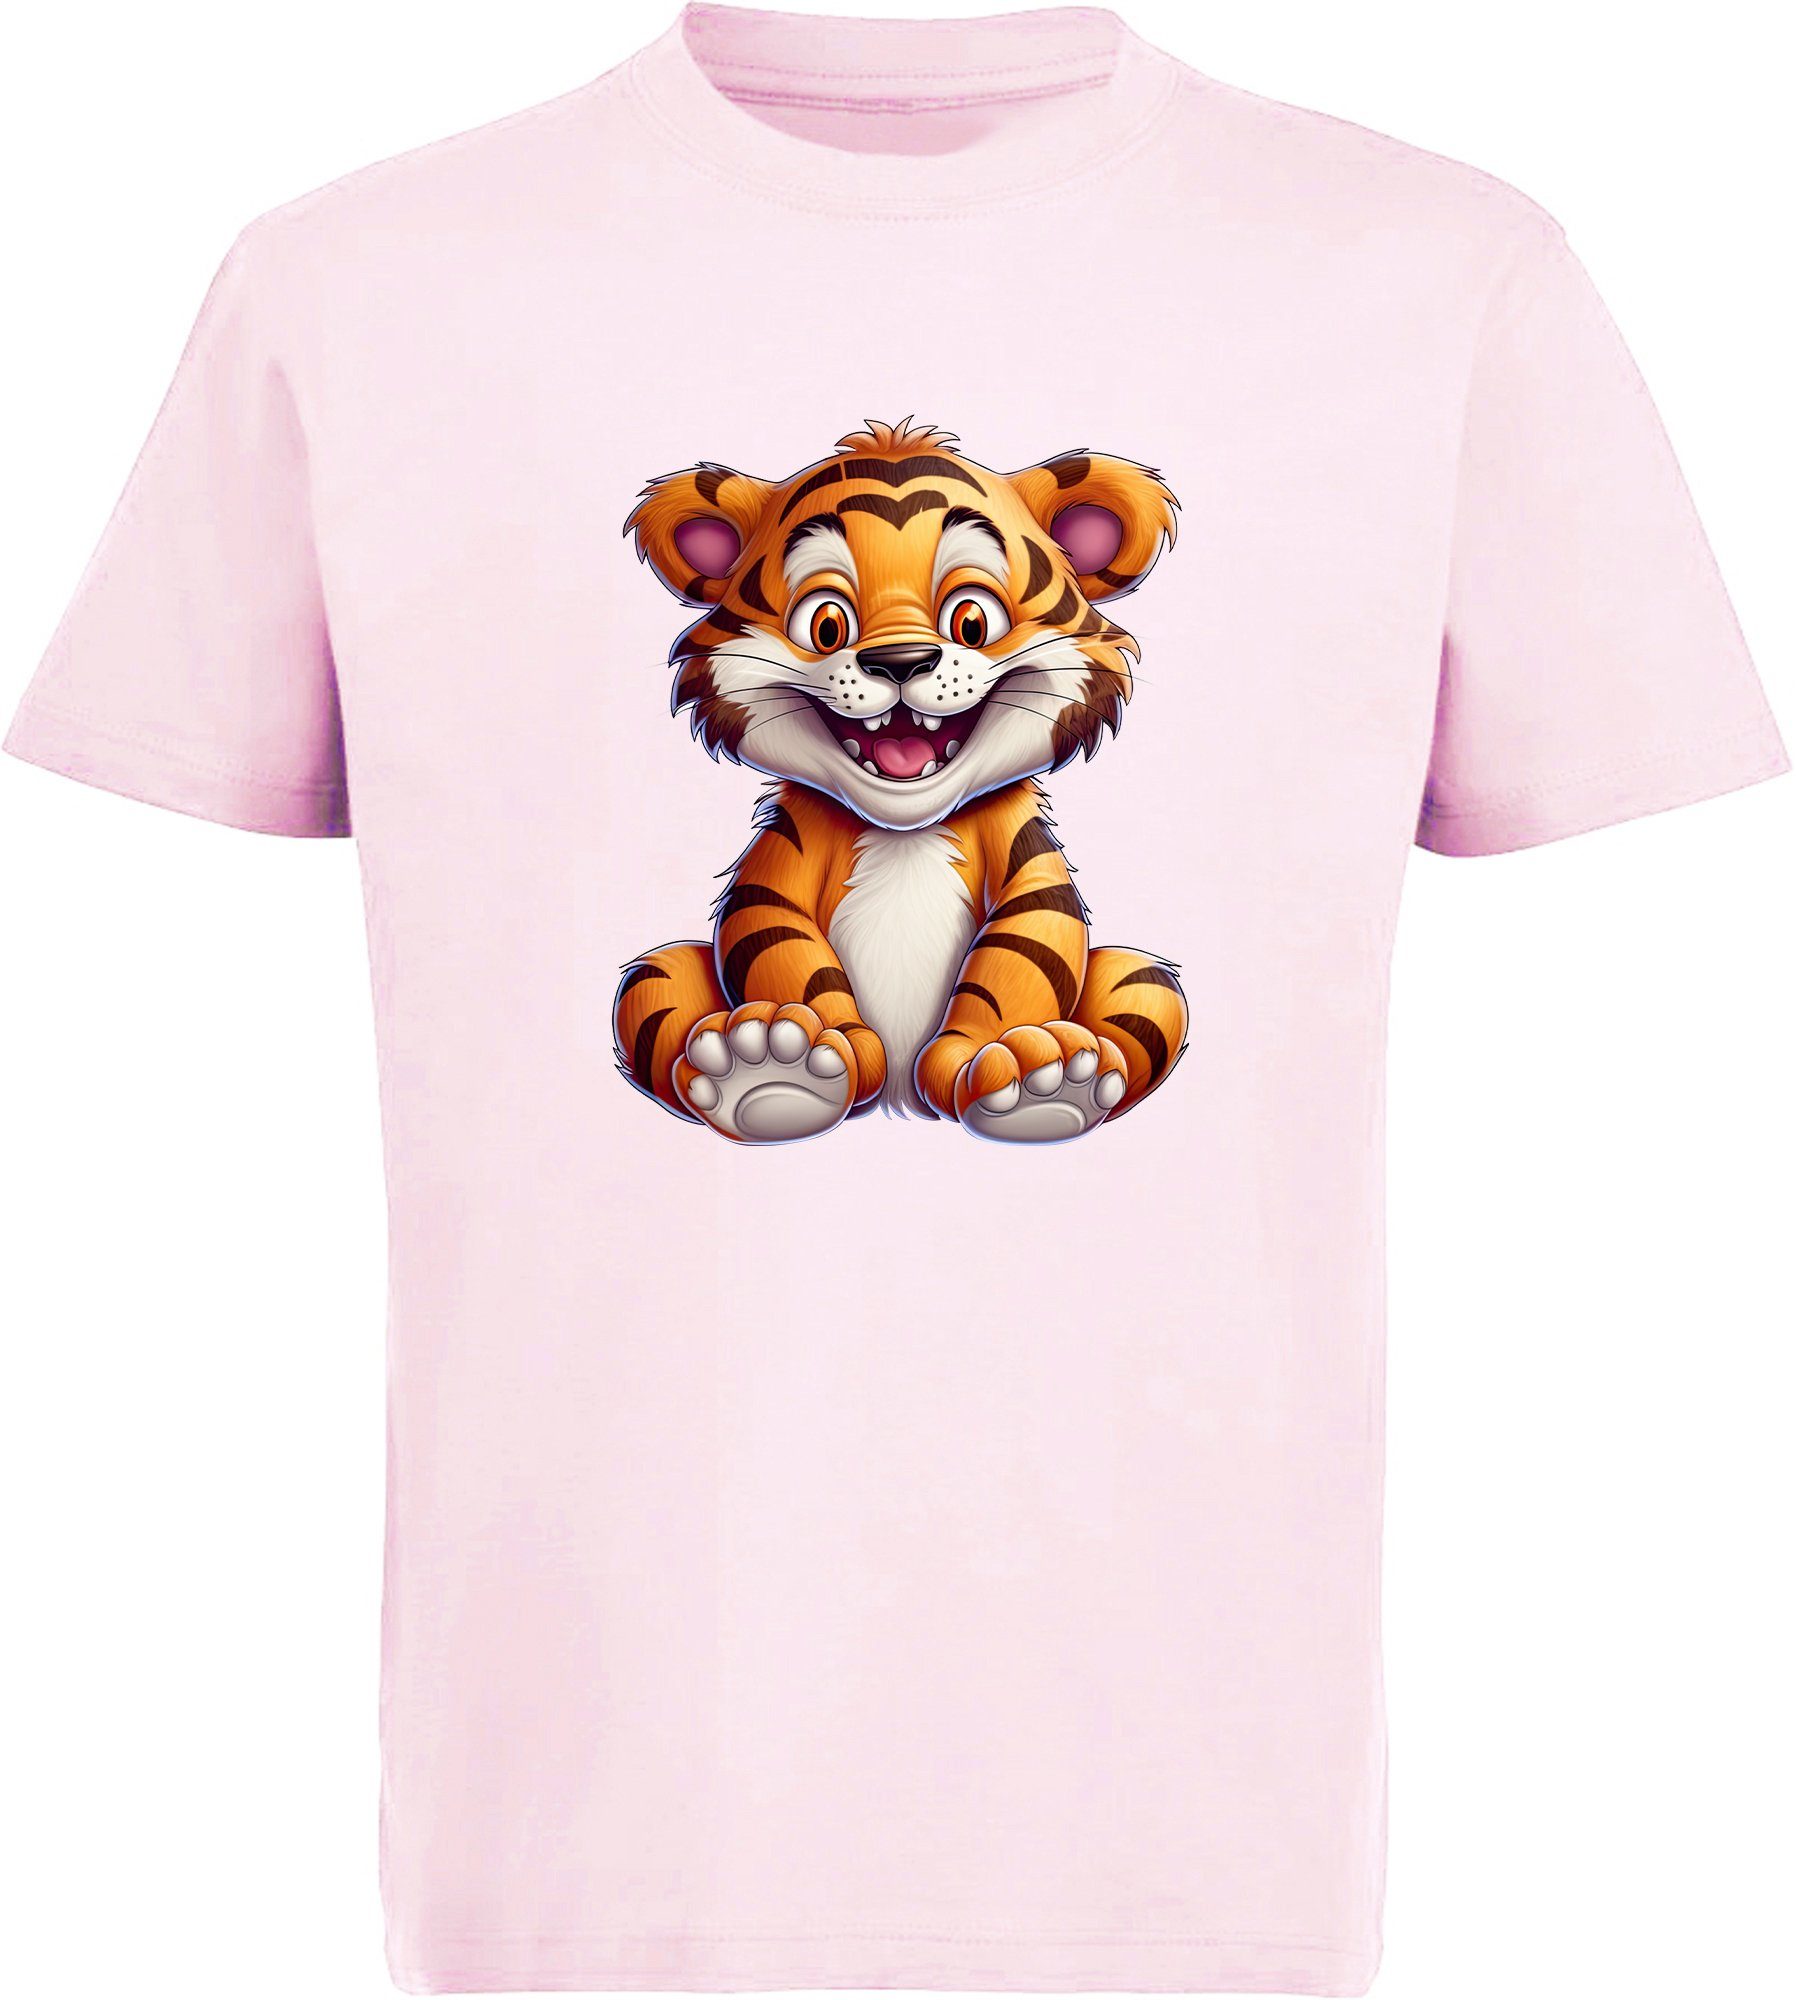 rosa Aufdruck, Baumwollshirt mit T-Shirt i278 Baby Tiger bedruckt Print Shirt MyDesign24 - Kinder Wildtier